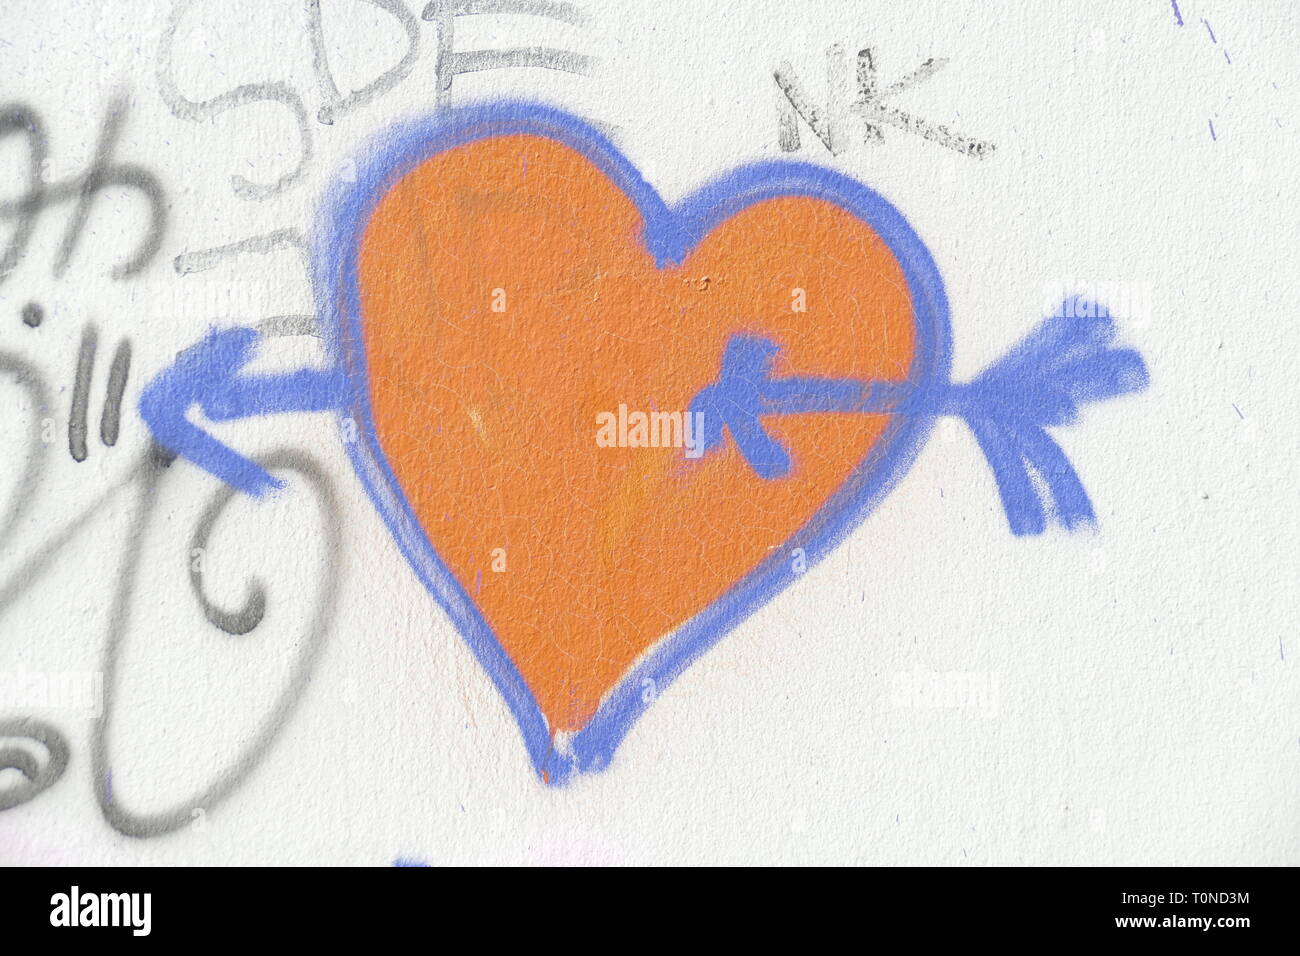 Auf weisse Steinmauer gemaltes rotes Herz mit Pfeil, Symbolbild Verliebtsein Banque D'Images